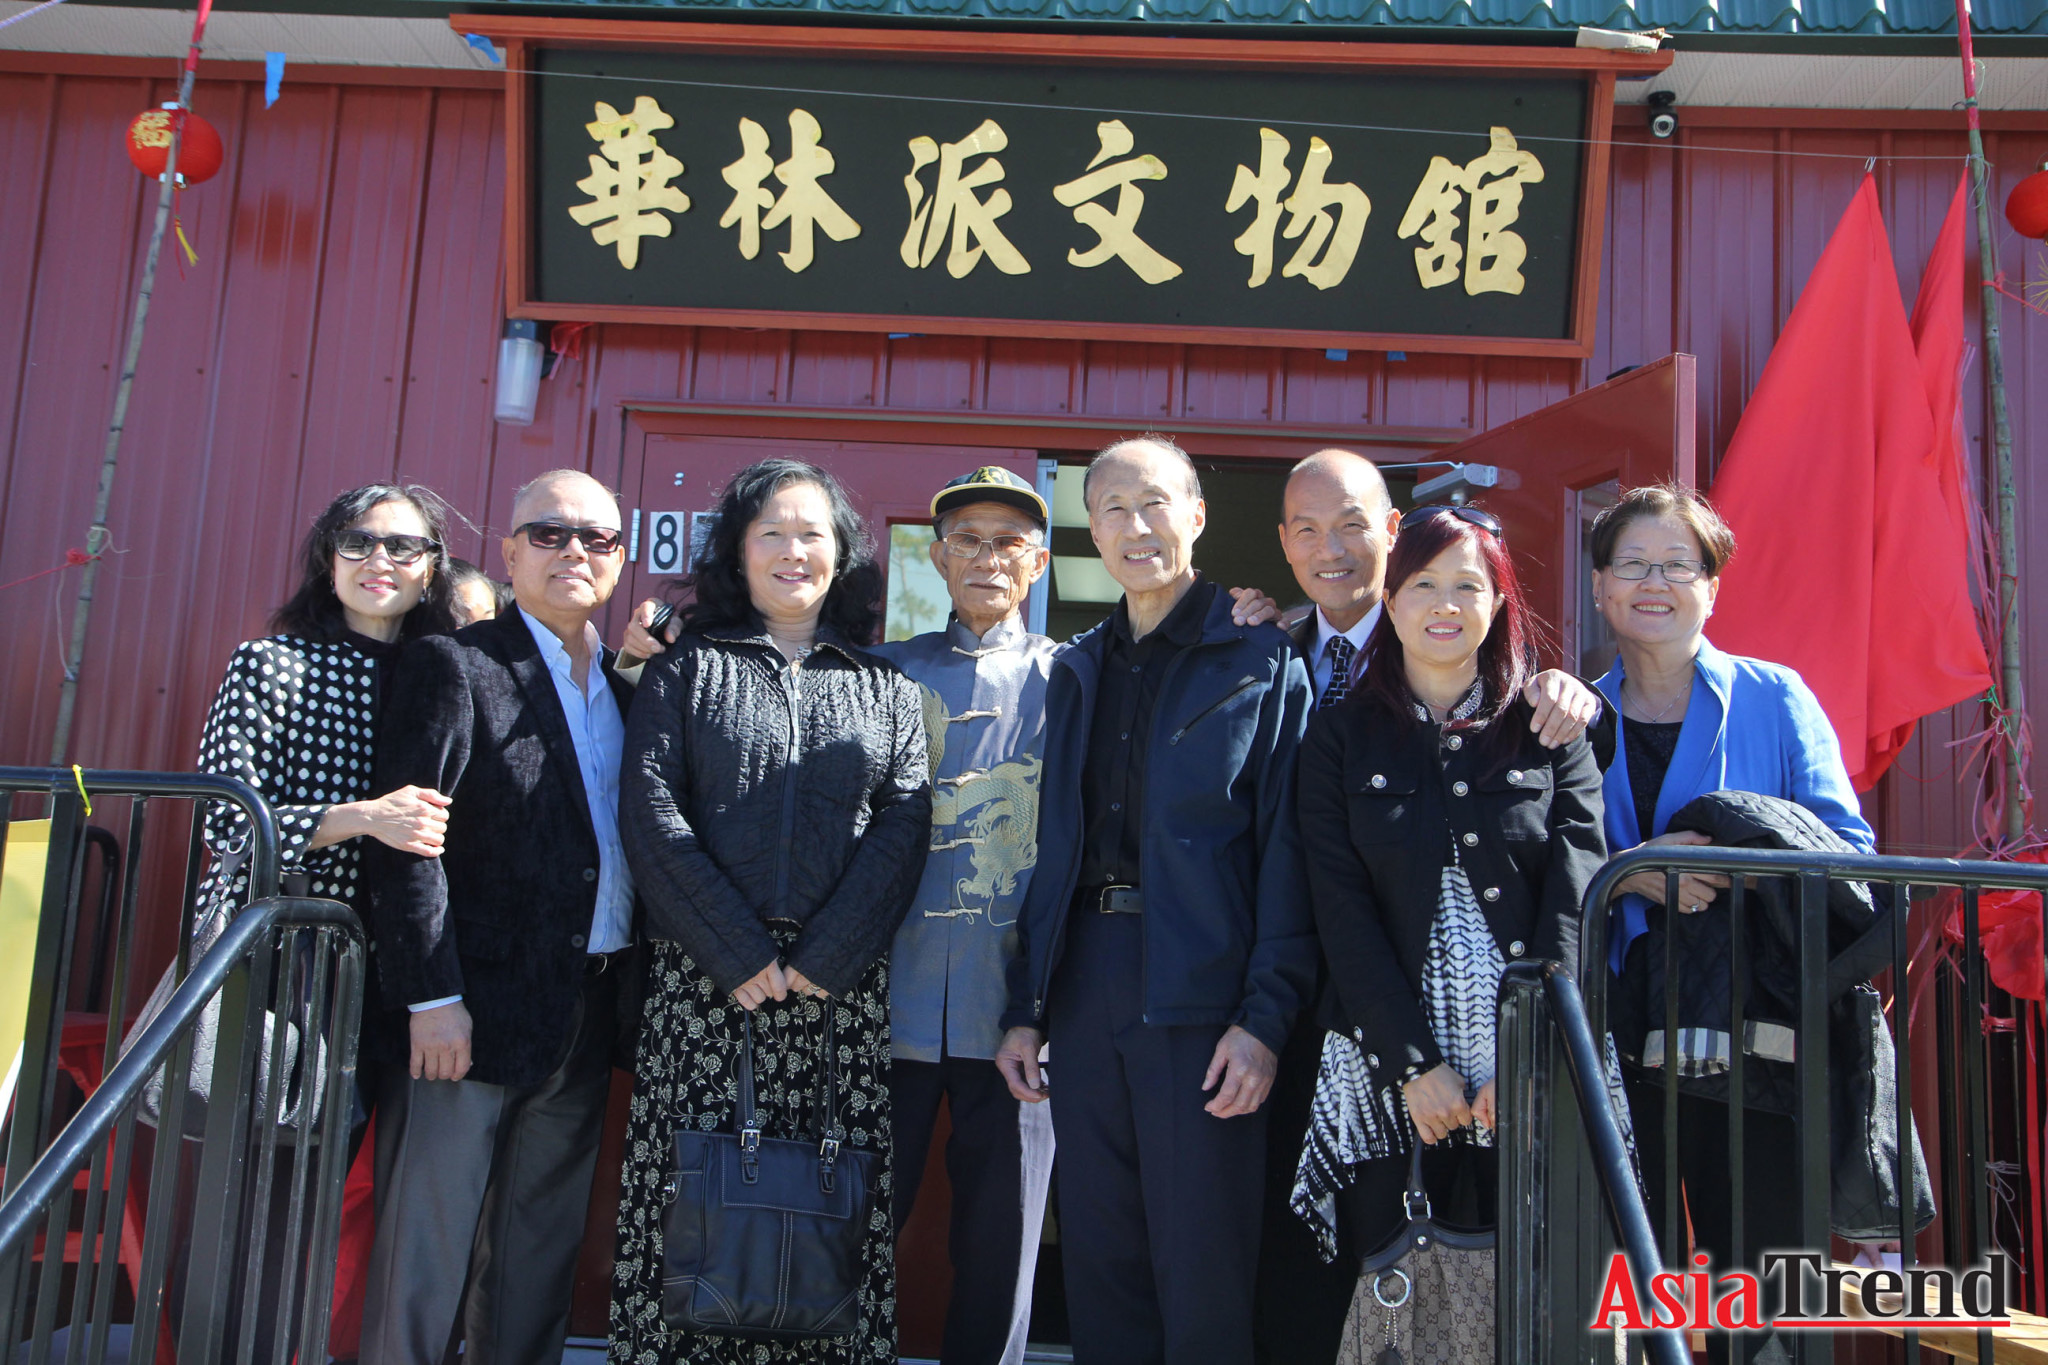 Mrs and Mr Tony Leung, Carling Leong, Grand Master Pui Chan, Grandmaster John Leong, Master Lee Siu Hung, Mrs. Lee, and Yin Fong Lee-Pang